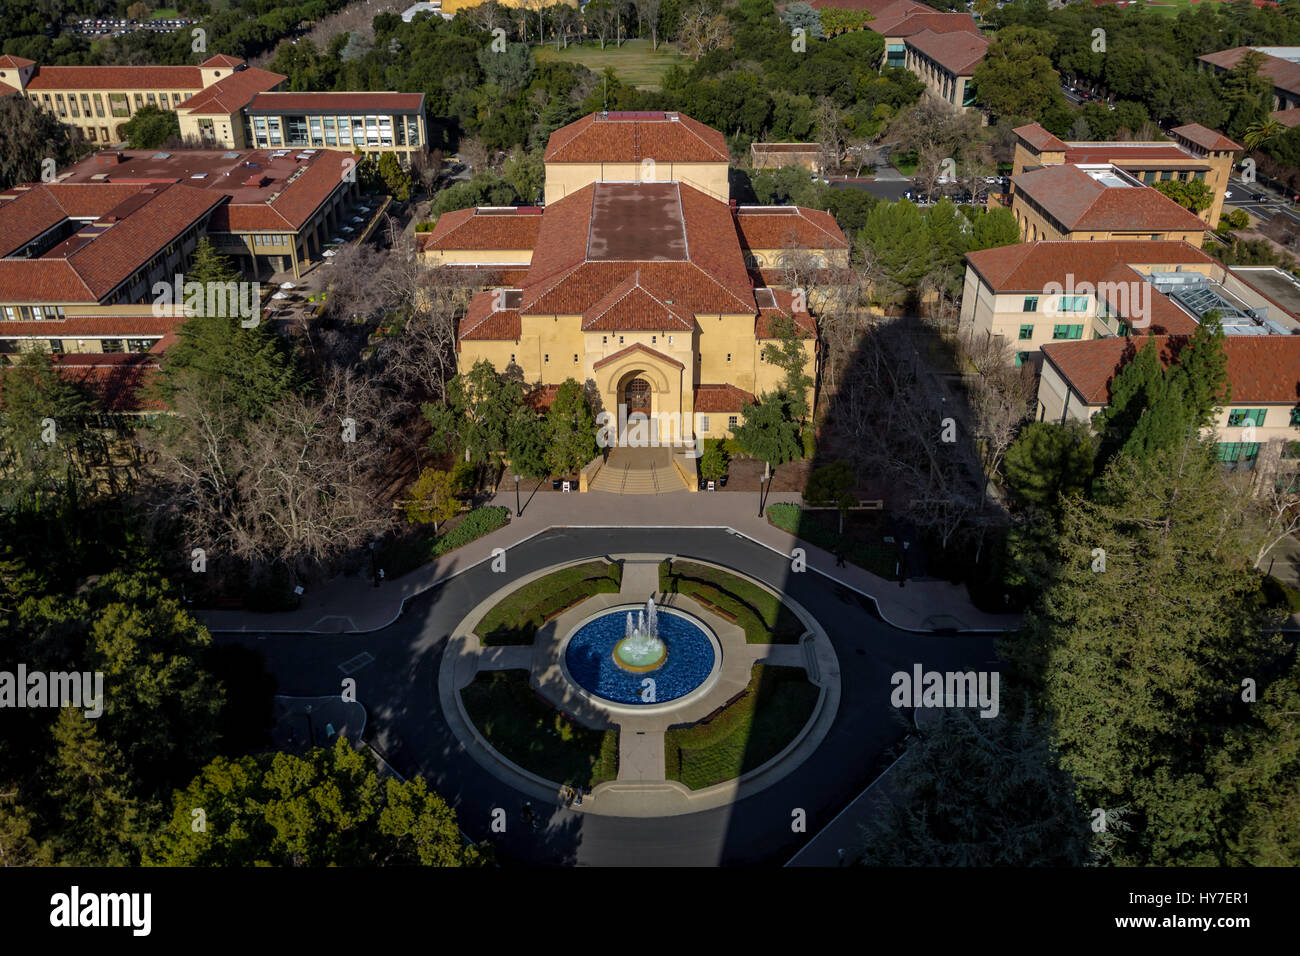 Vue aérienne du Campus de l'Université de Stanford - Palo Alto, Californie, États-Unis Banque D'Images